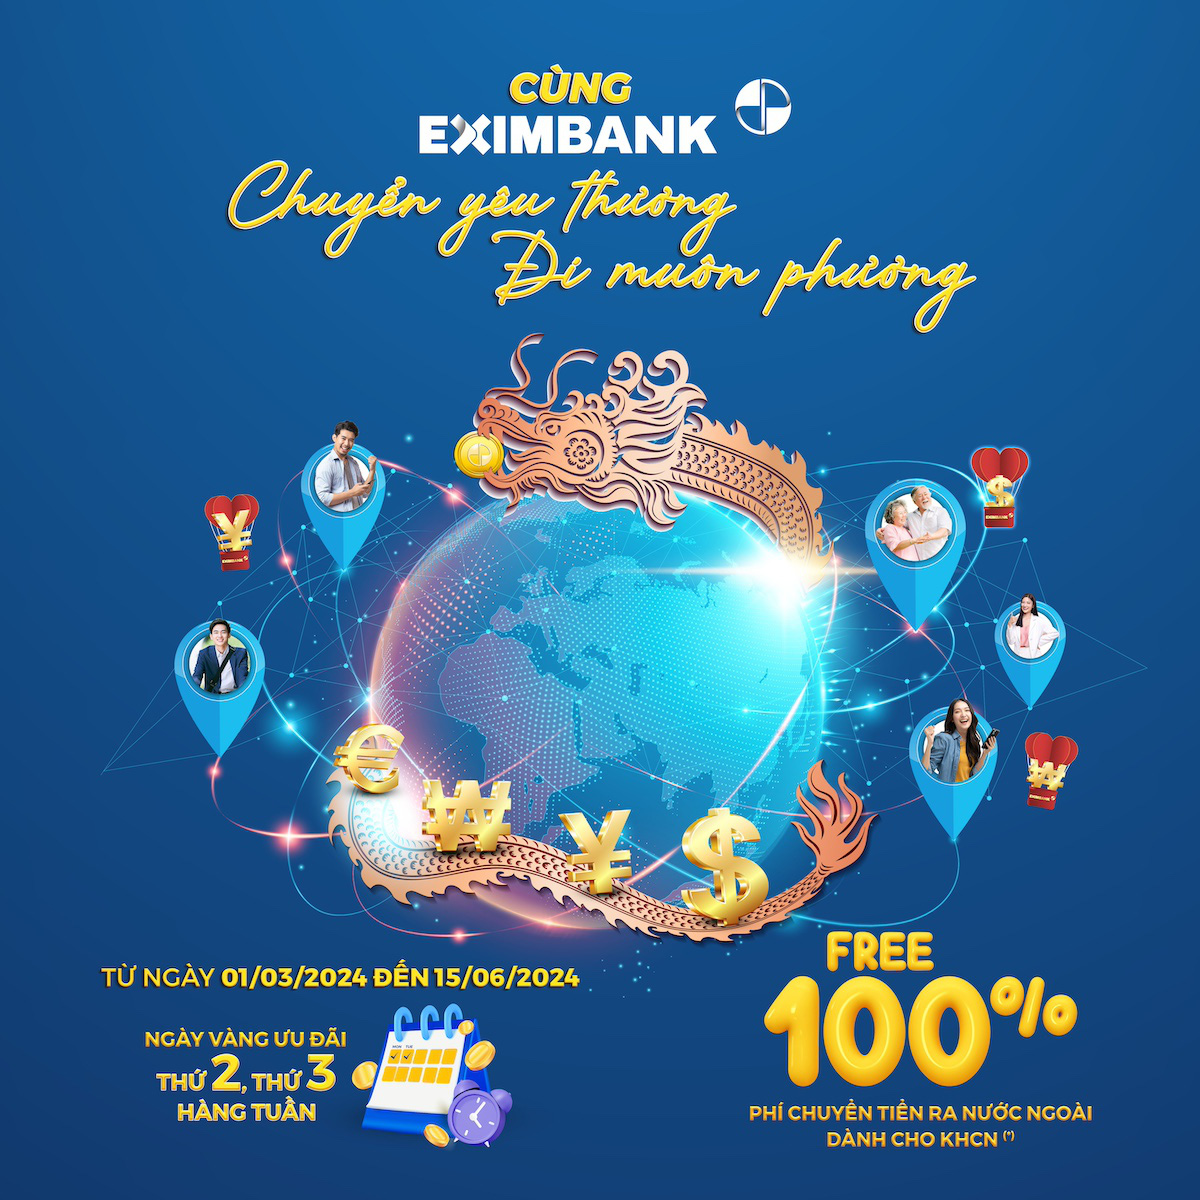 Eximbank vừa triển khai chương trình khuyến mại “Cùng Eximbank chuyển yêu thương - Đi muôn phương”, áp dụng cho khách hàng cá nhân chuyển tiền quốc tế - Ảnh: Eximbank